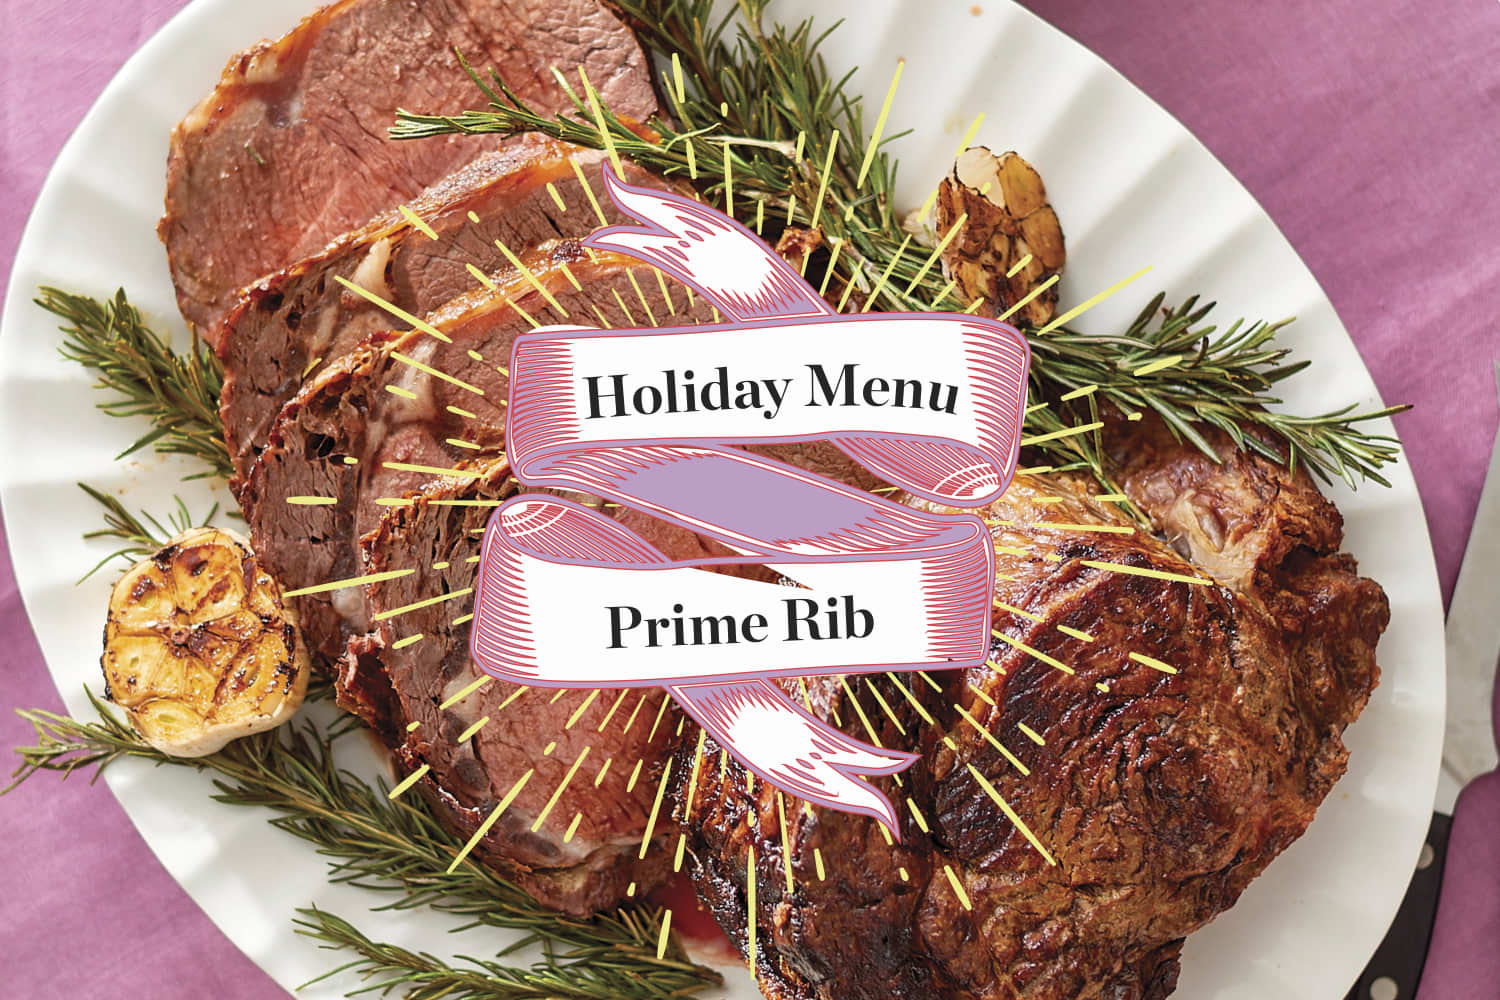 Prime Rib Christmas Dinner Menu
 A Menu for a Prime Rib Holiday Dinner